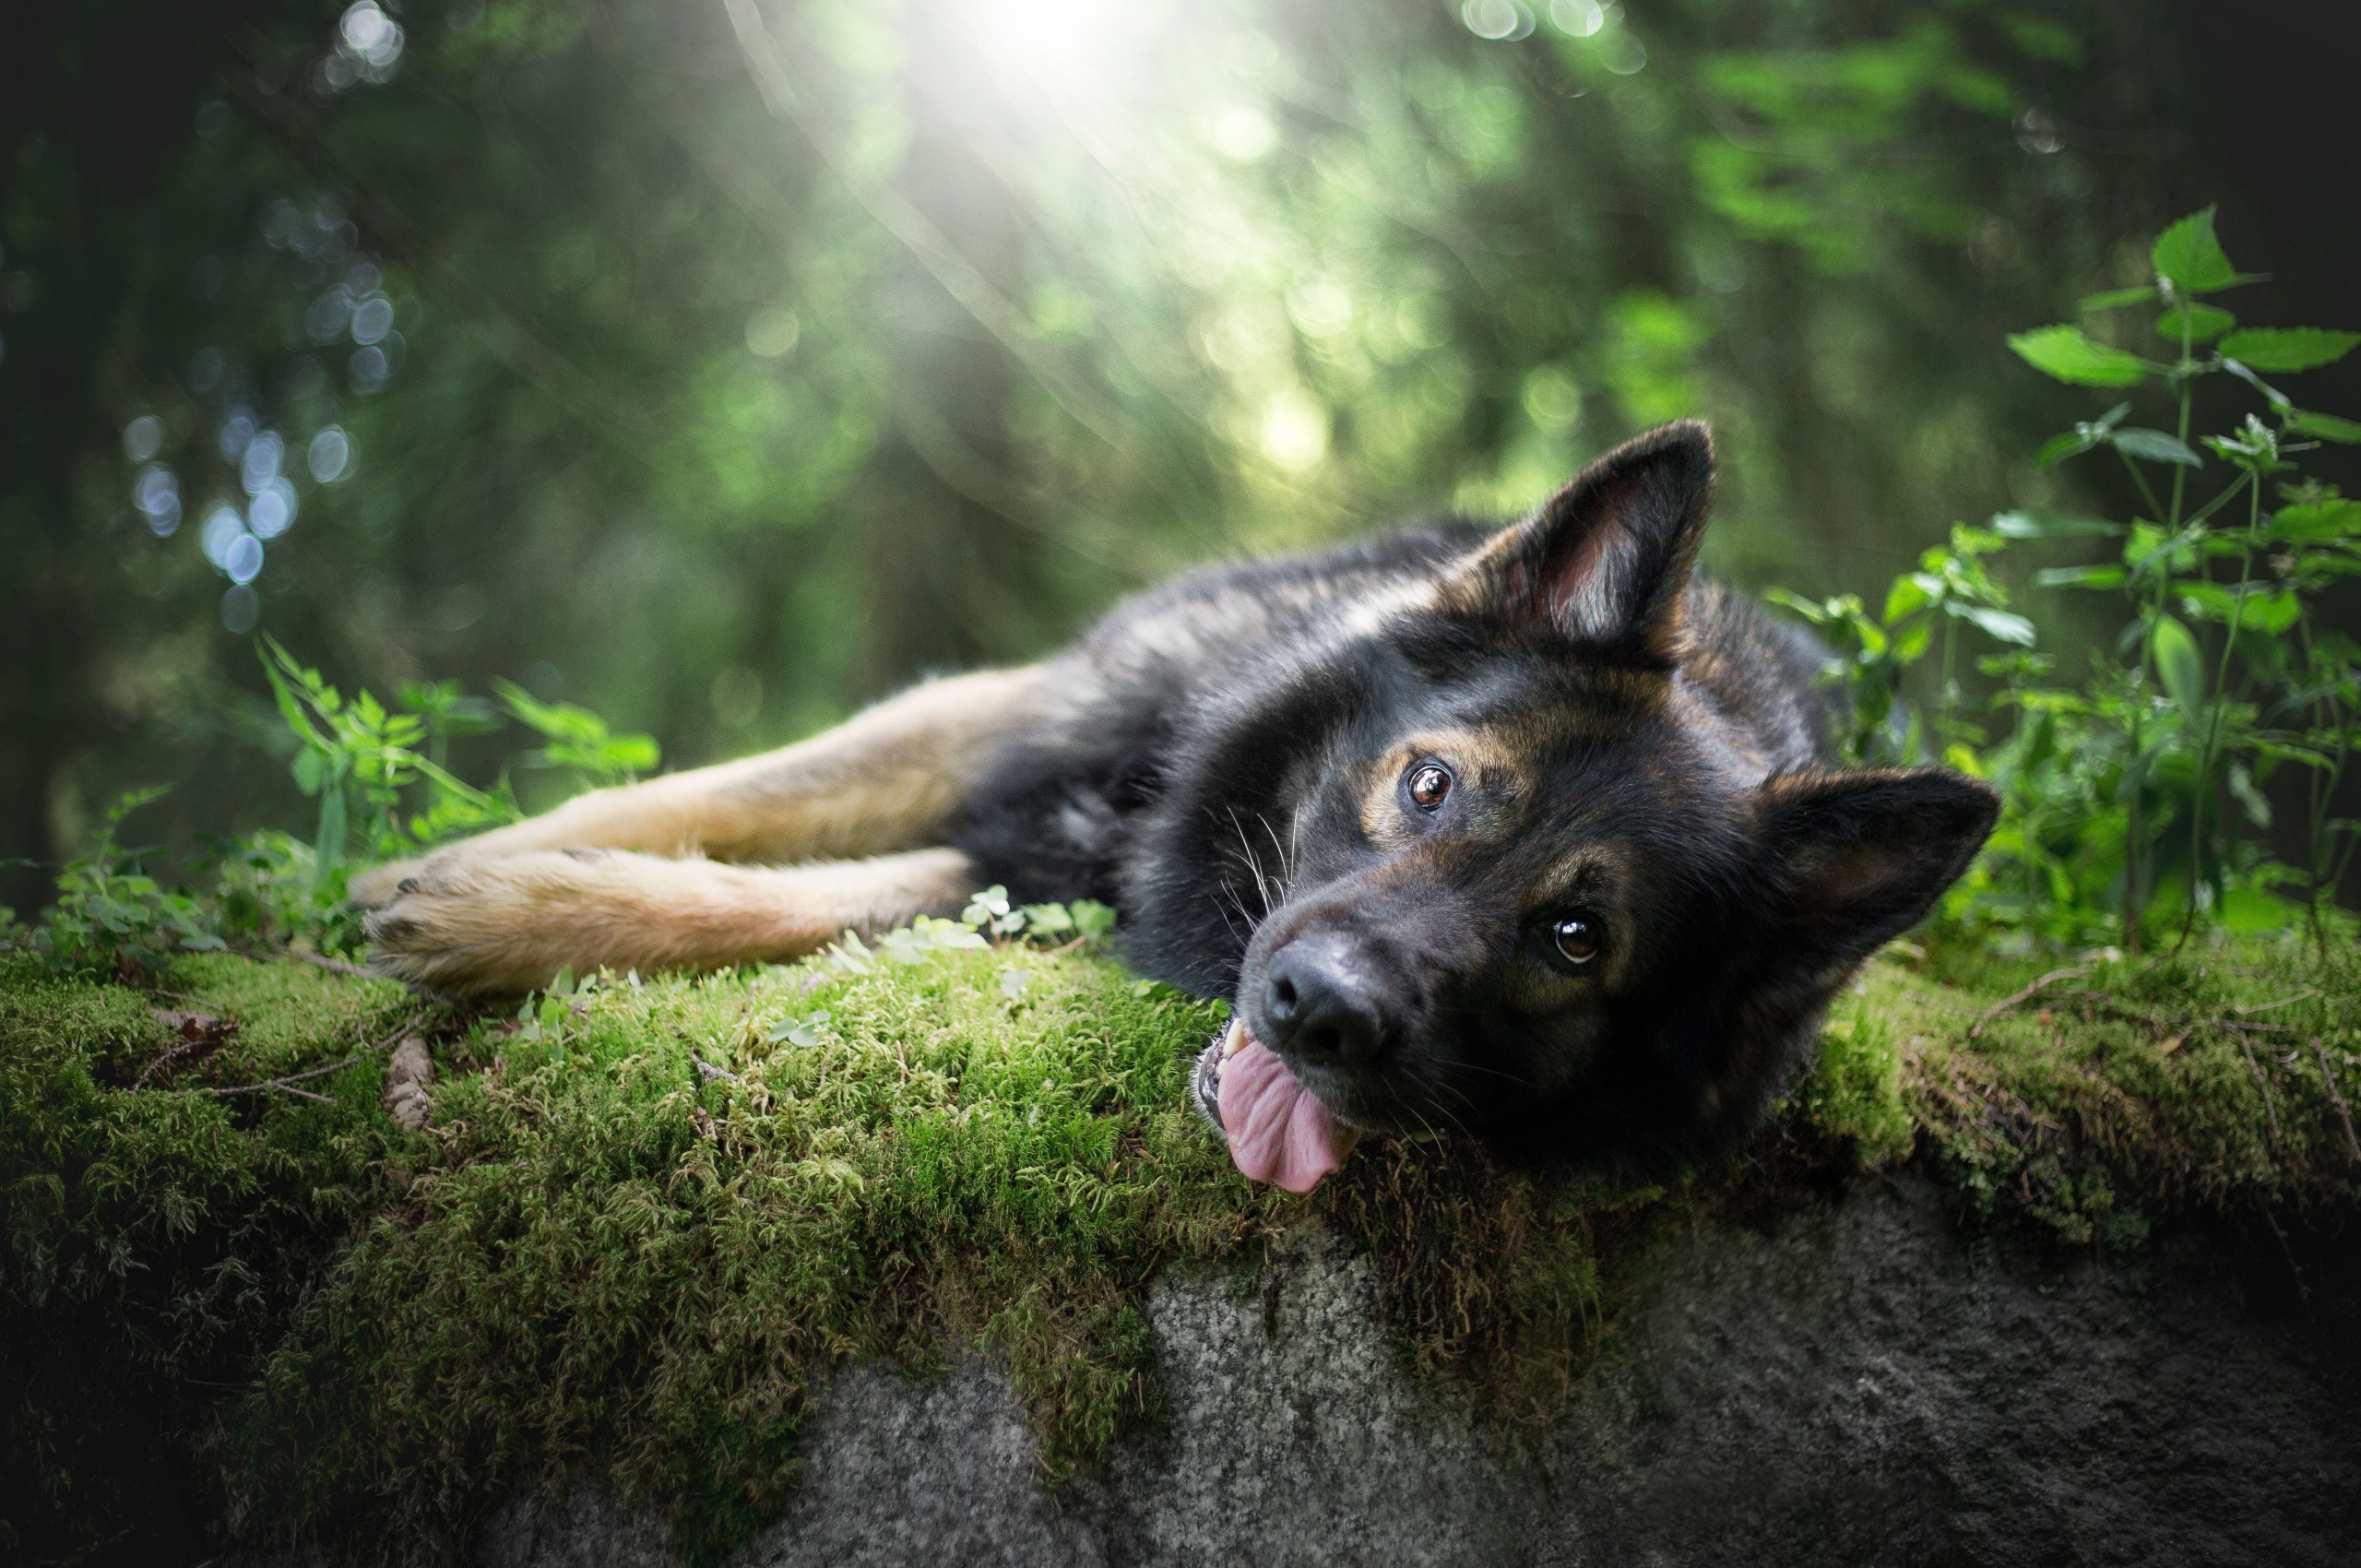 German Shepherd Dog, Lying Down, Grass, Bokeh, Funny , HD Wallpaper & Backgrounds